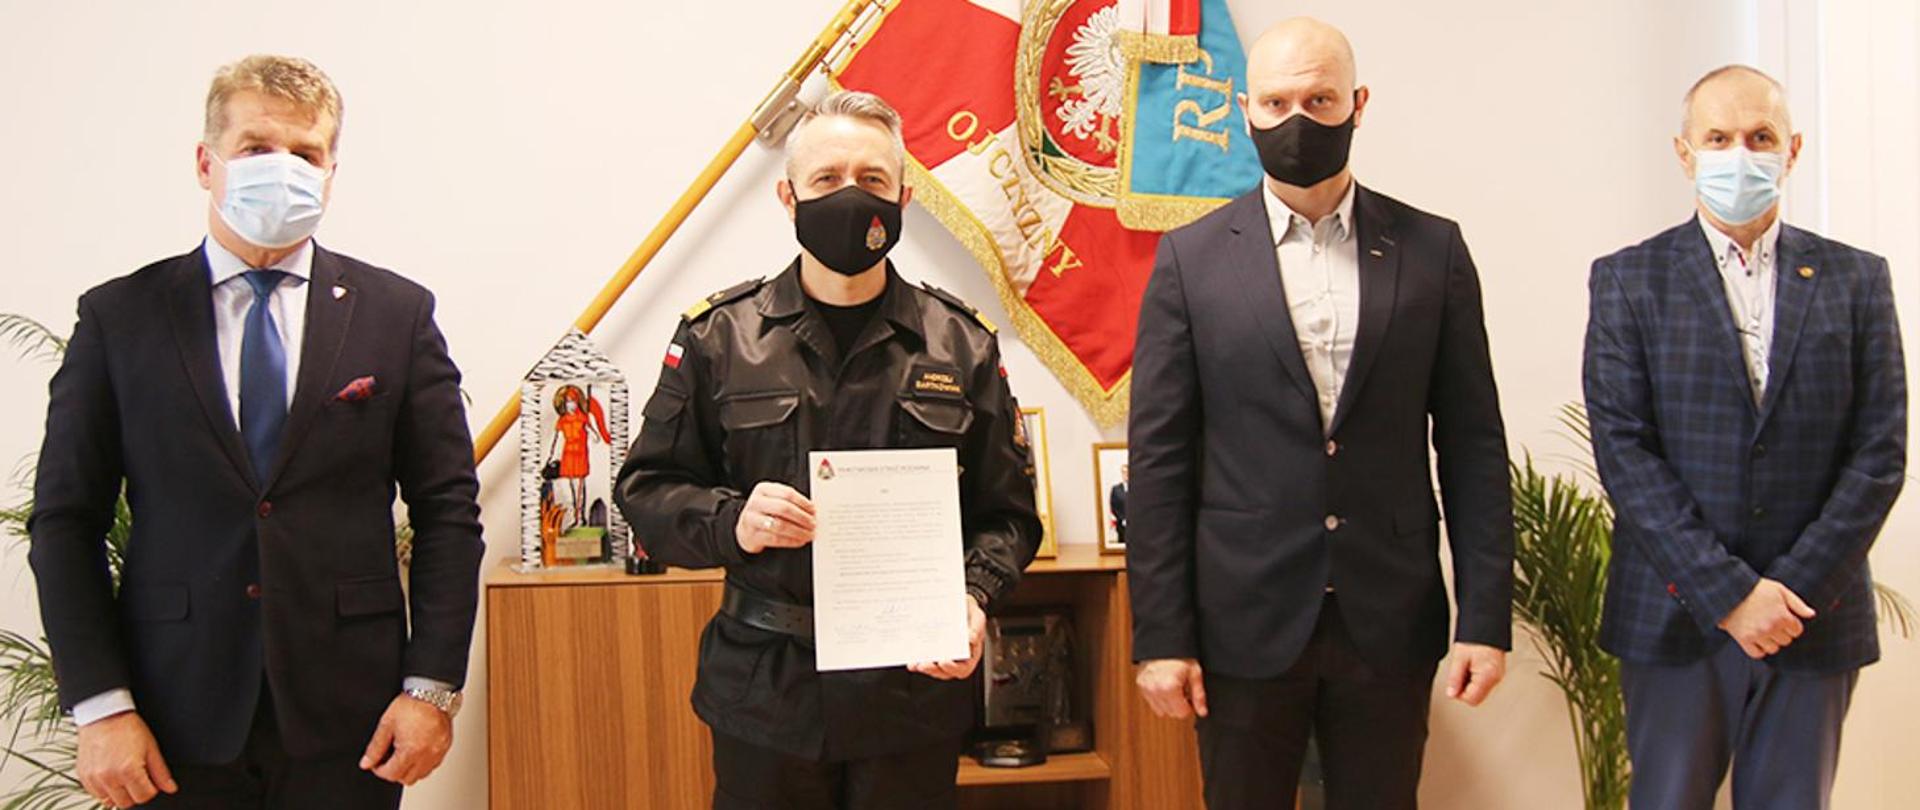 Komendant Główny Państwowej Straży Pożarnej nadbryg. Andrzej Bartkowiak, wraz z przedstawicielami Związków Zawodowych działających w PSP, apelują o oddawanie osocza przez strażaków